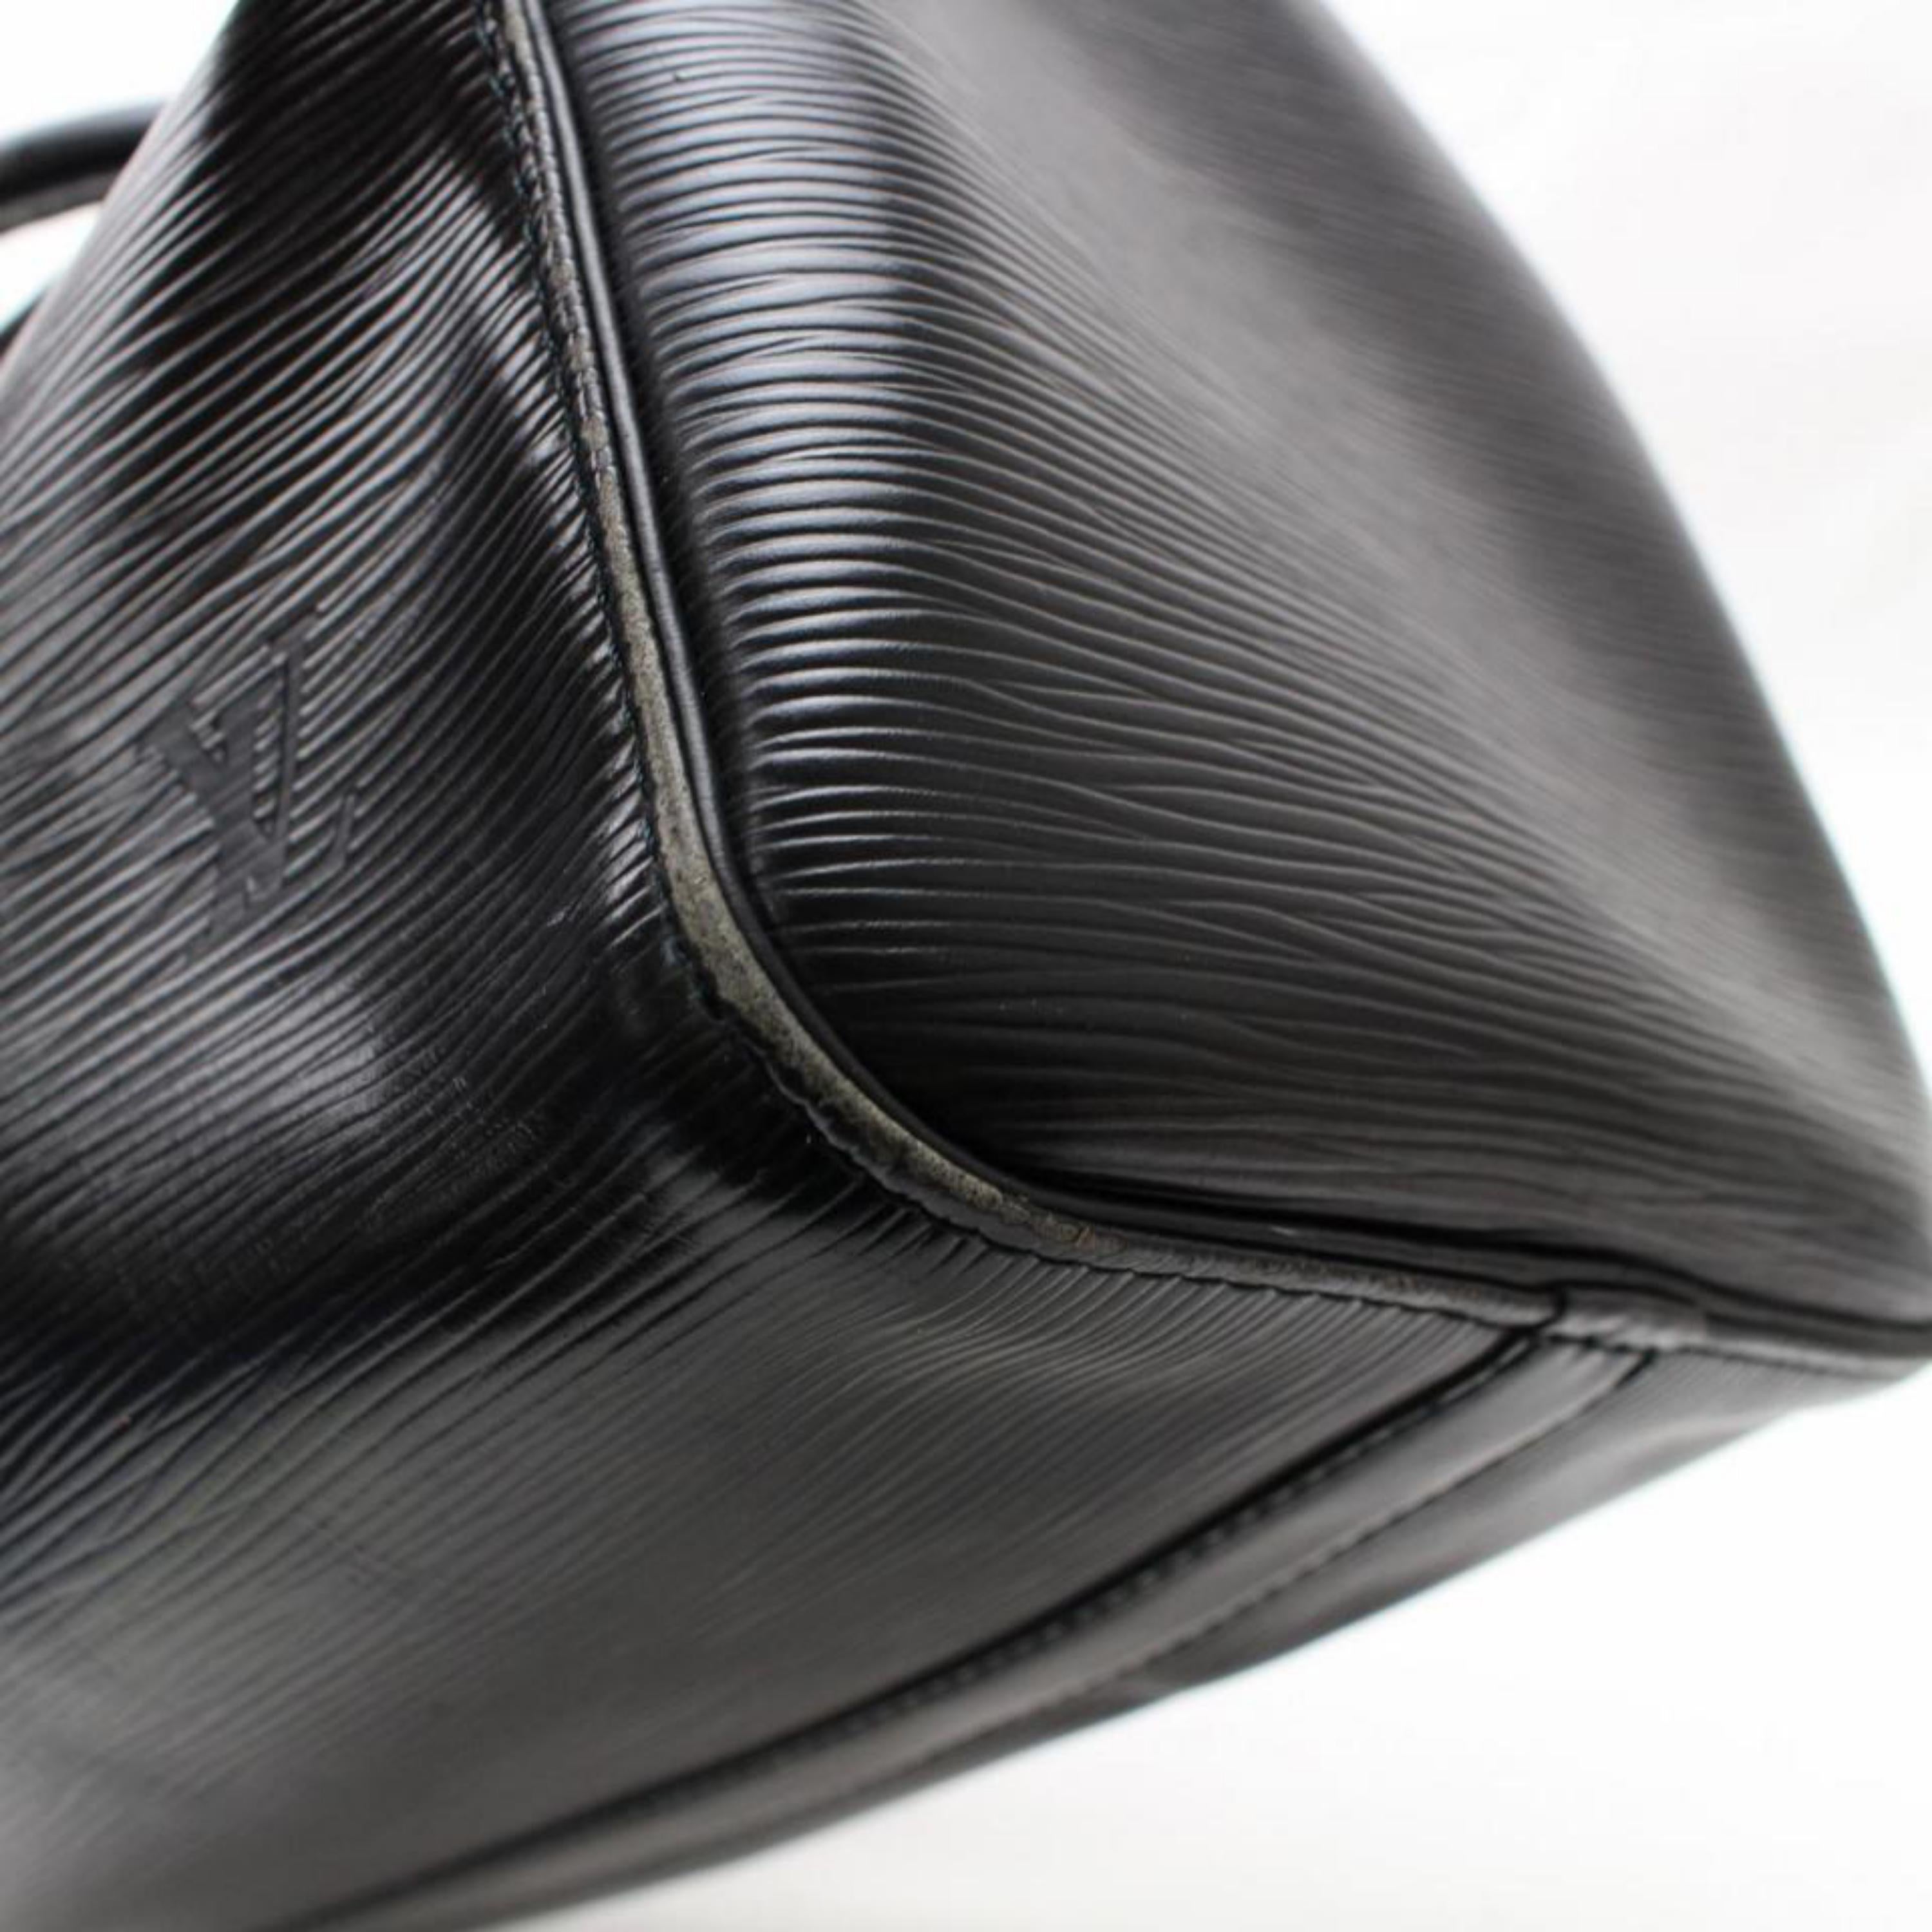 Louis Vuitton Speedy Epi Noir 30 867755 Black Leather Satchel For Sale 3